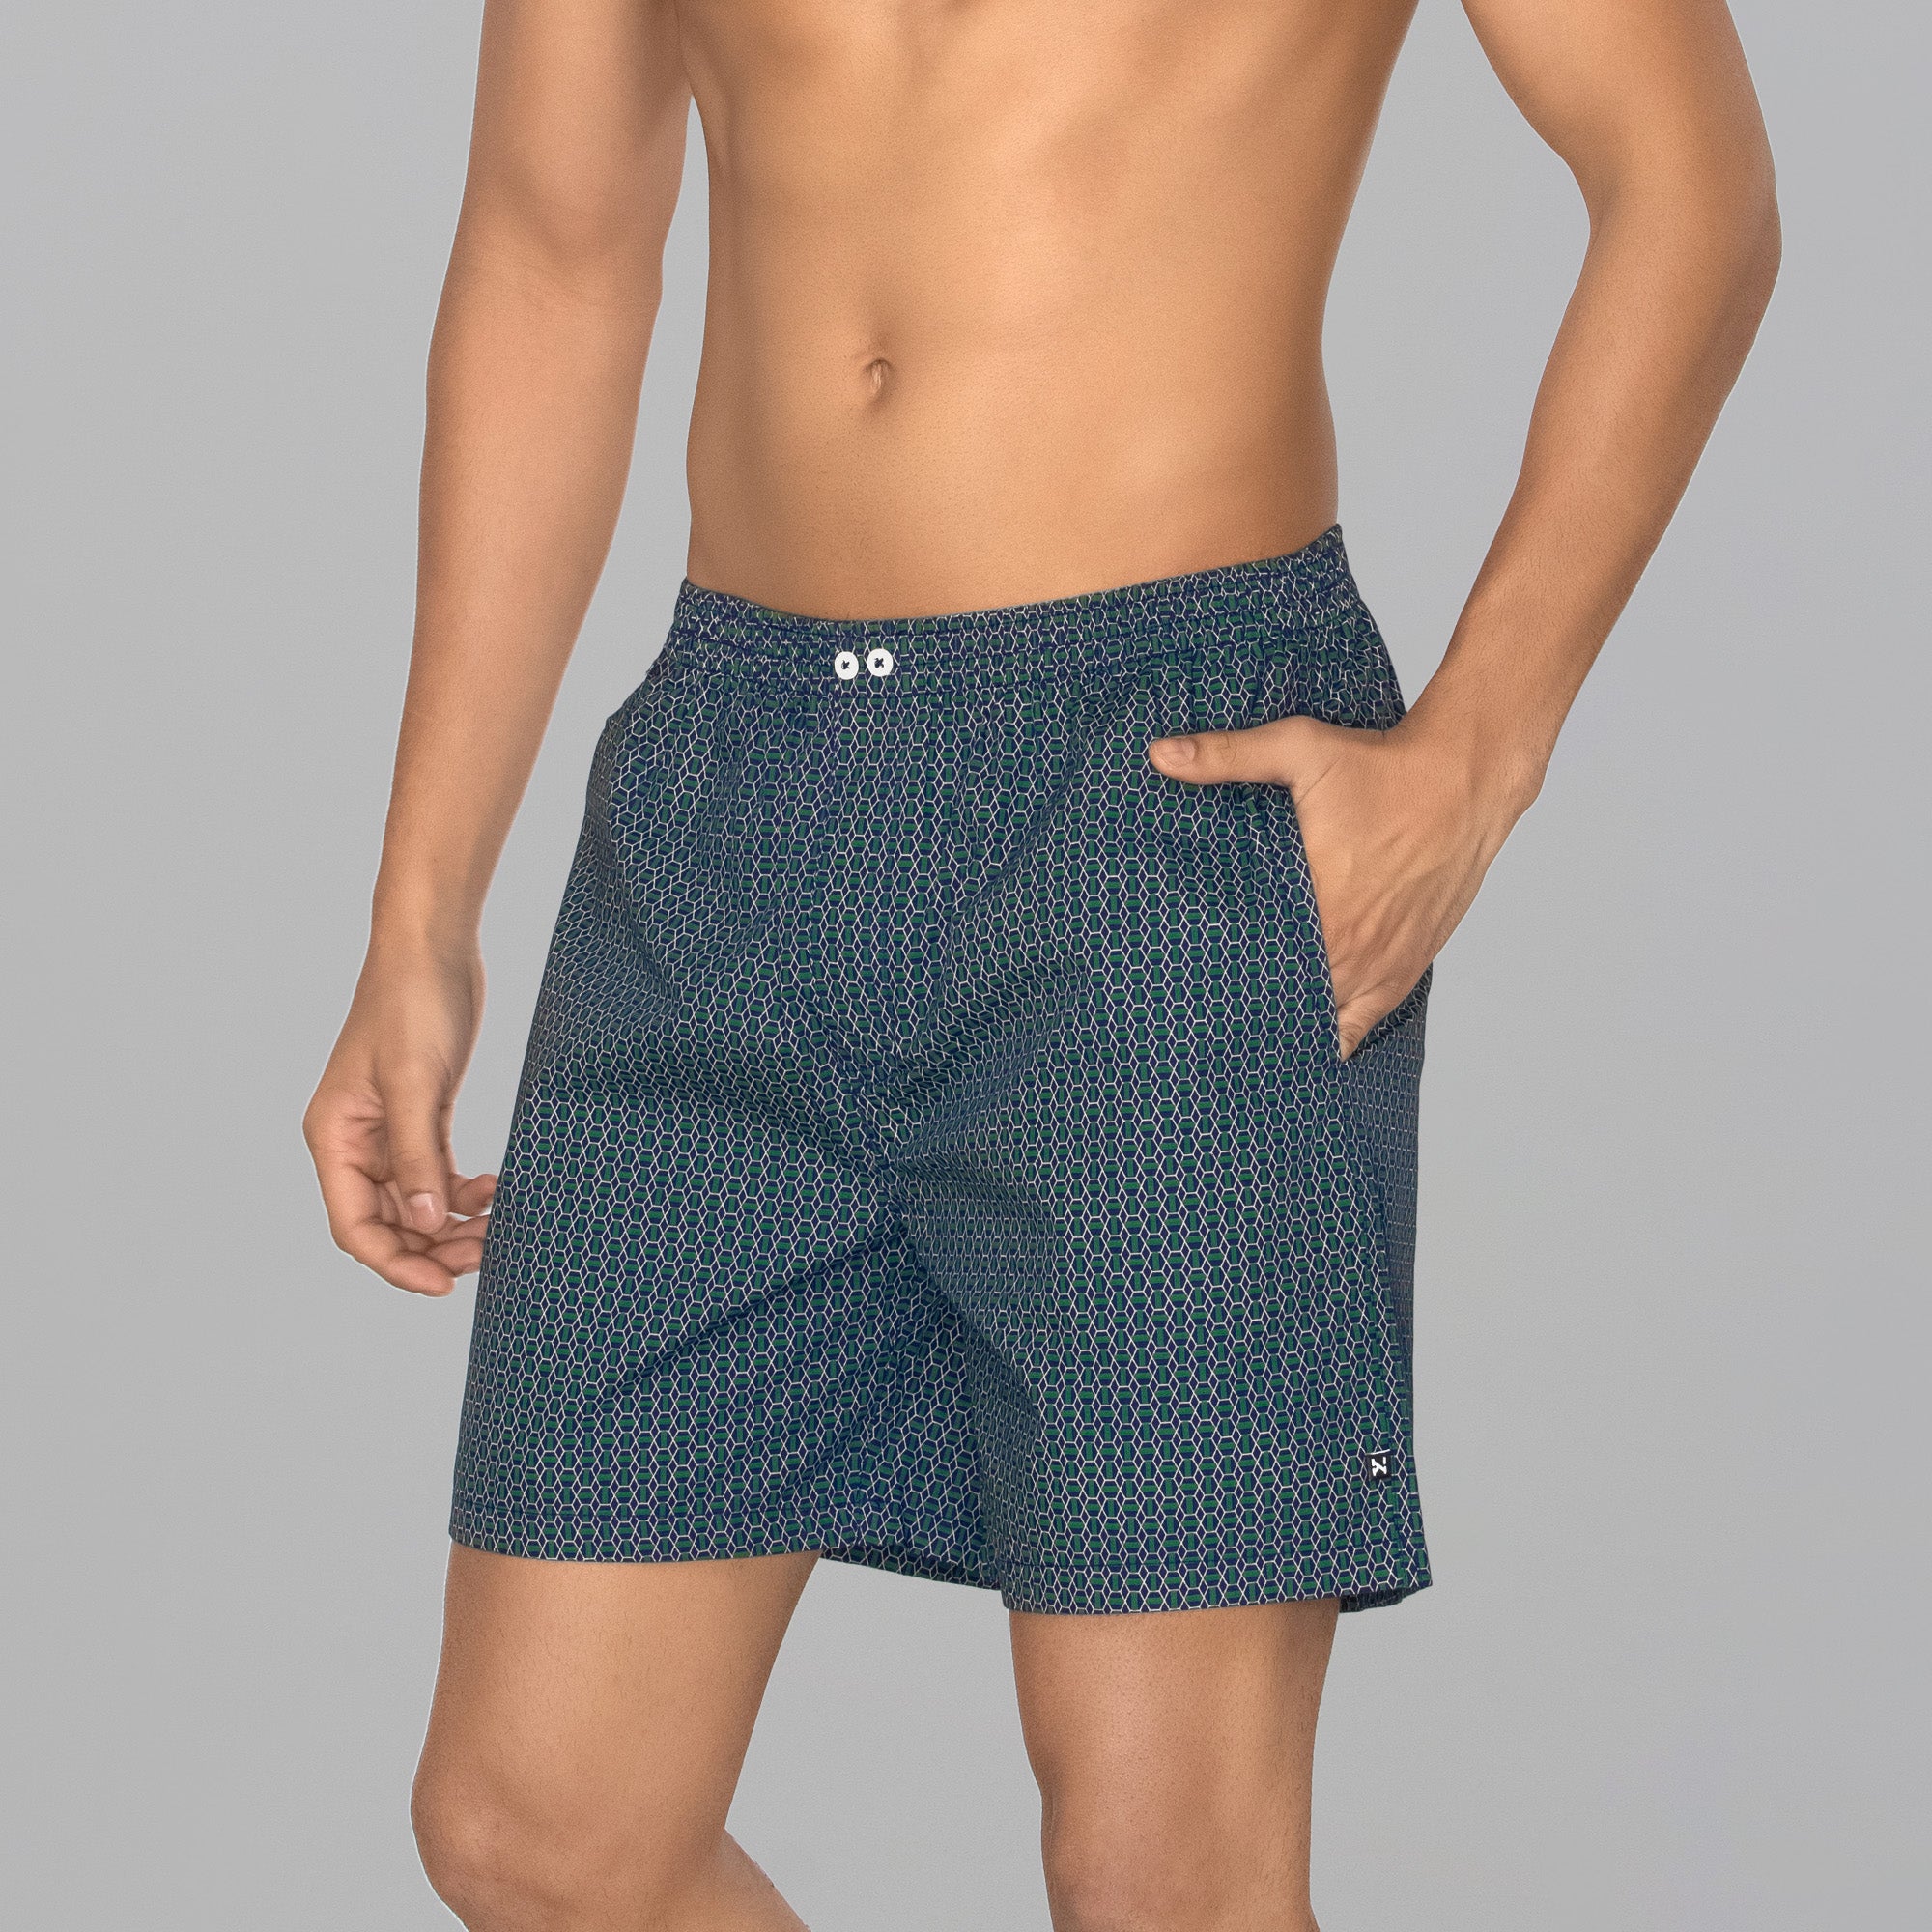 Boxer Shorts - Buy Cotton Boxer Shorts for Men Online – XYXX Apparels